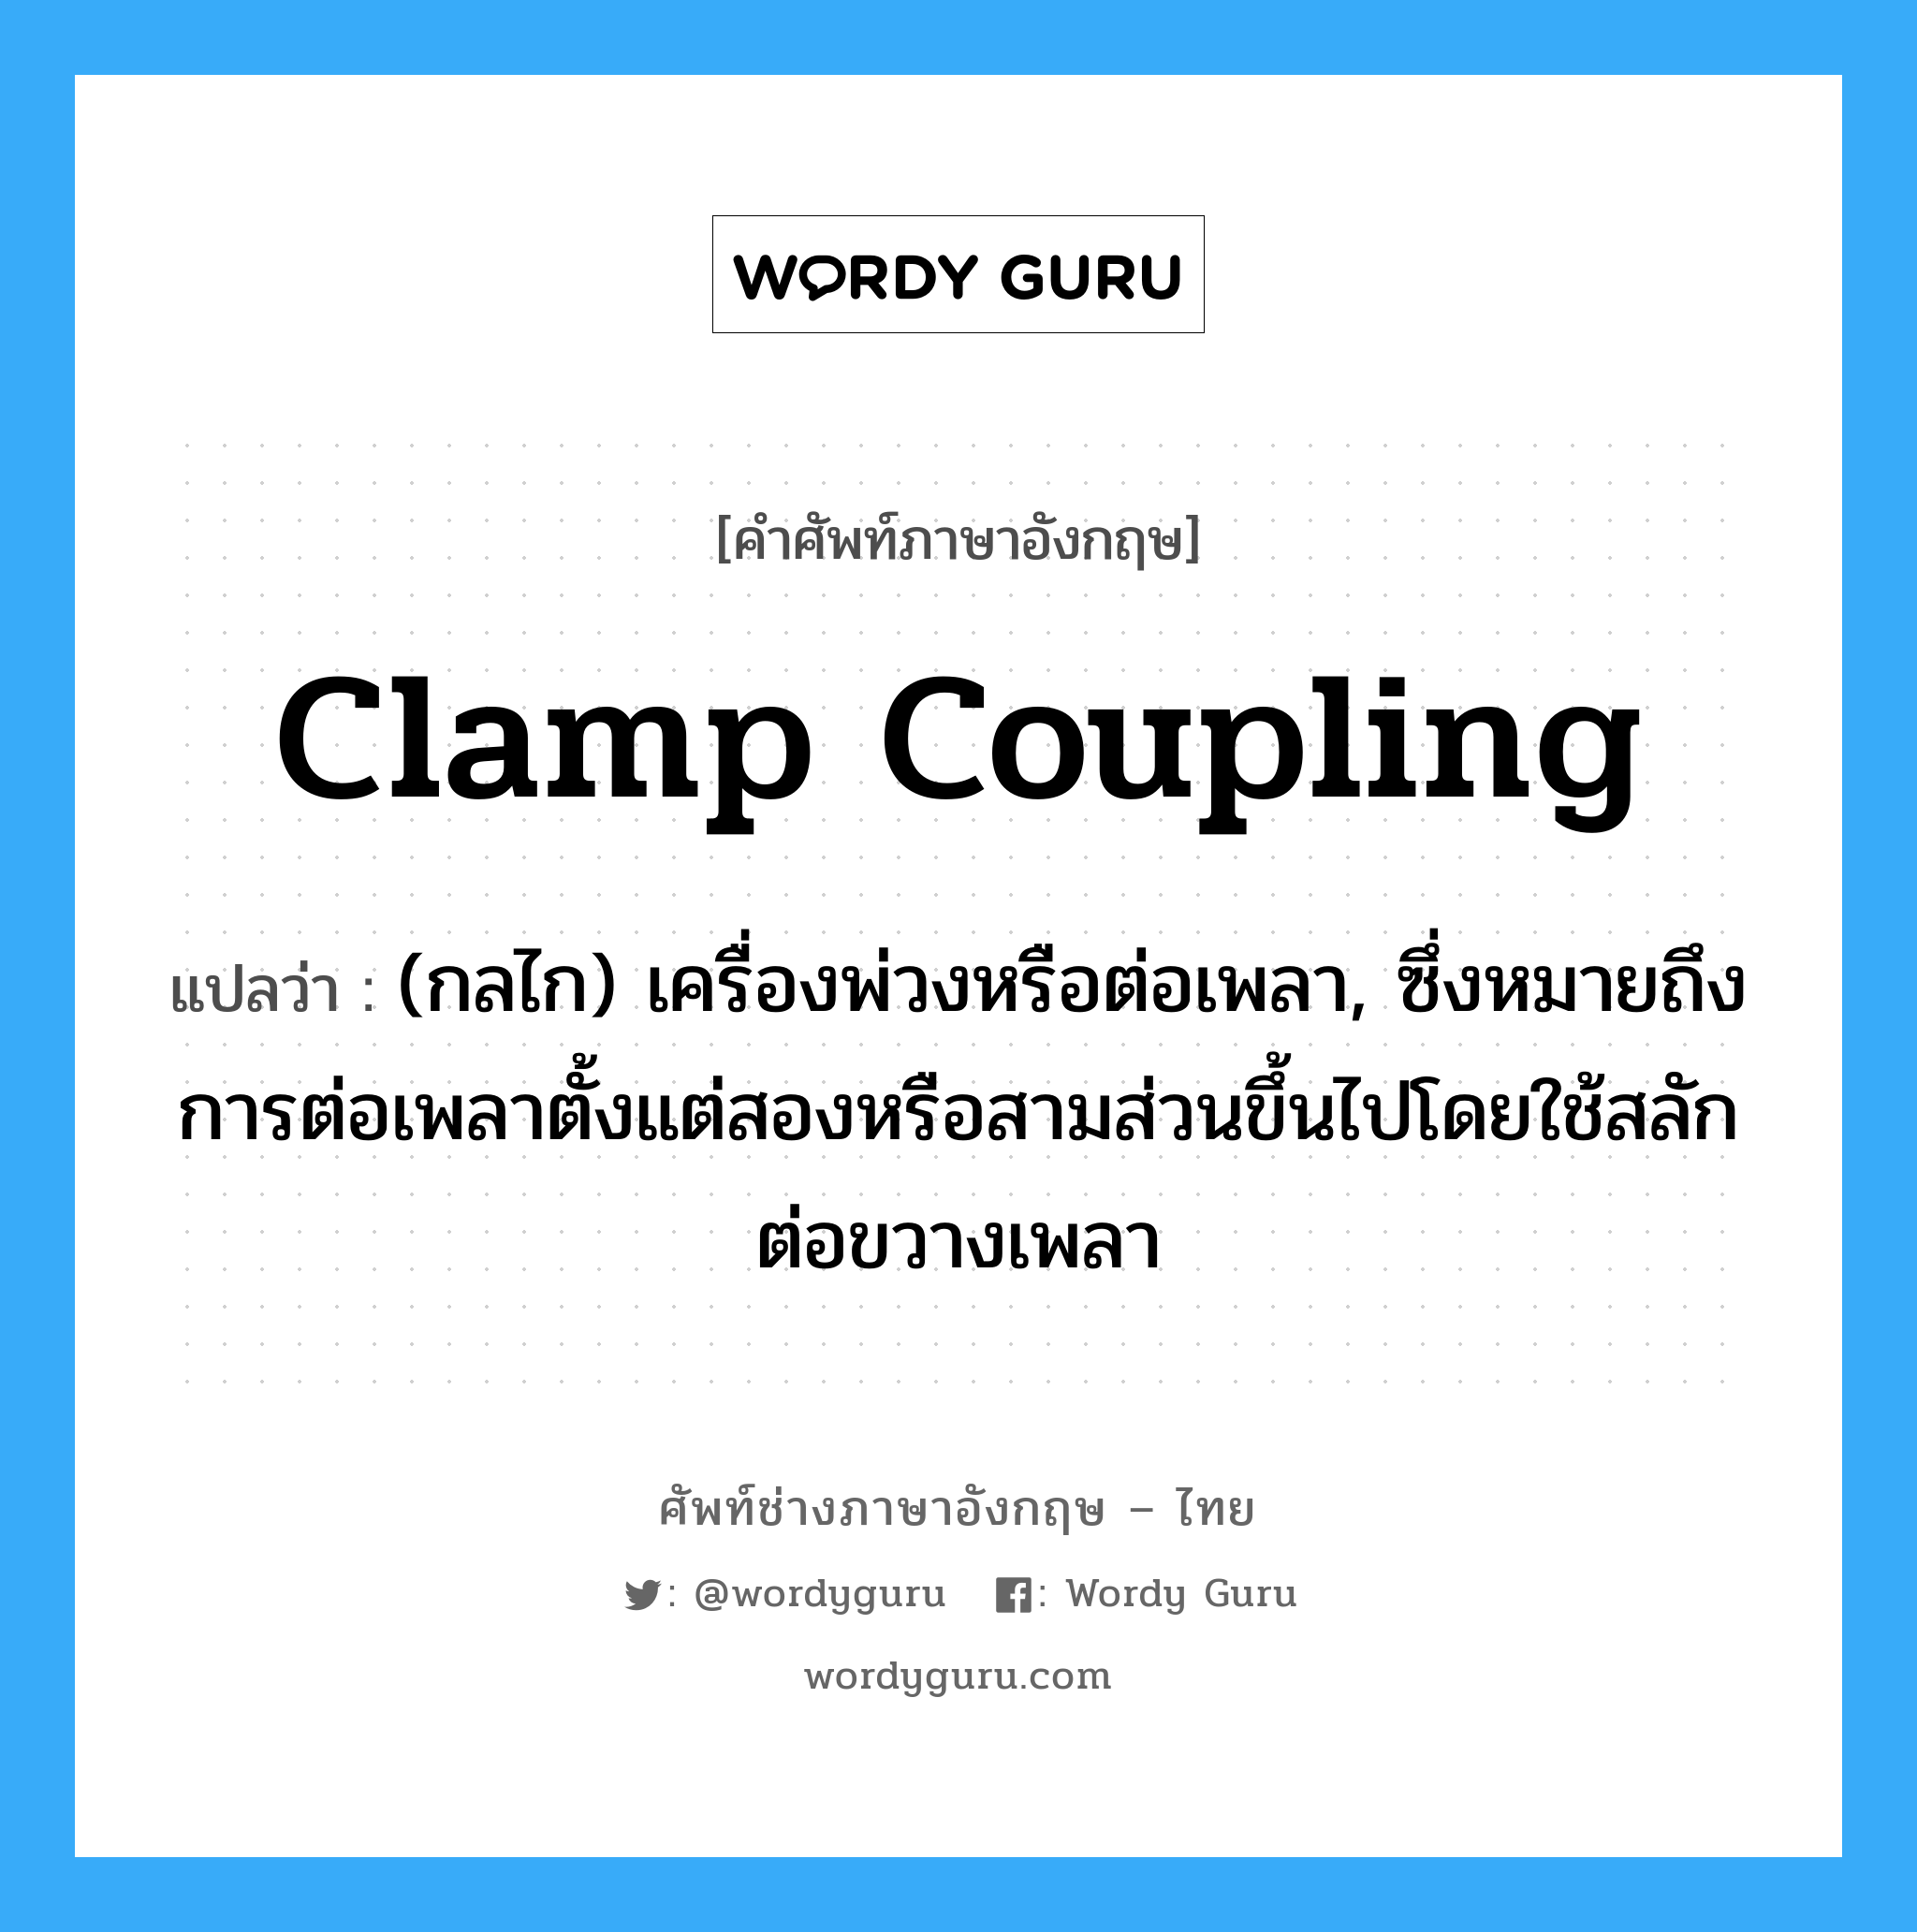 clamp coupling แปลว่า?, คำศัพท์ช่างภาษาอังกฤษ - ไทย clamp coupling คำศัพท์ภาษาอังกฤษ clamp coupling แปลว่า (กลไก) เครื่องพ่วงหรือต่อเพลา, ซึ่งหมายถึงการต่อเพลาตั้งแต่สองหรือสามส่วนขึ้นไปโดยใช้สลักต่อขวางเพลา